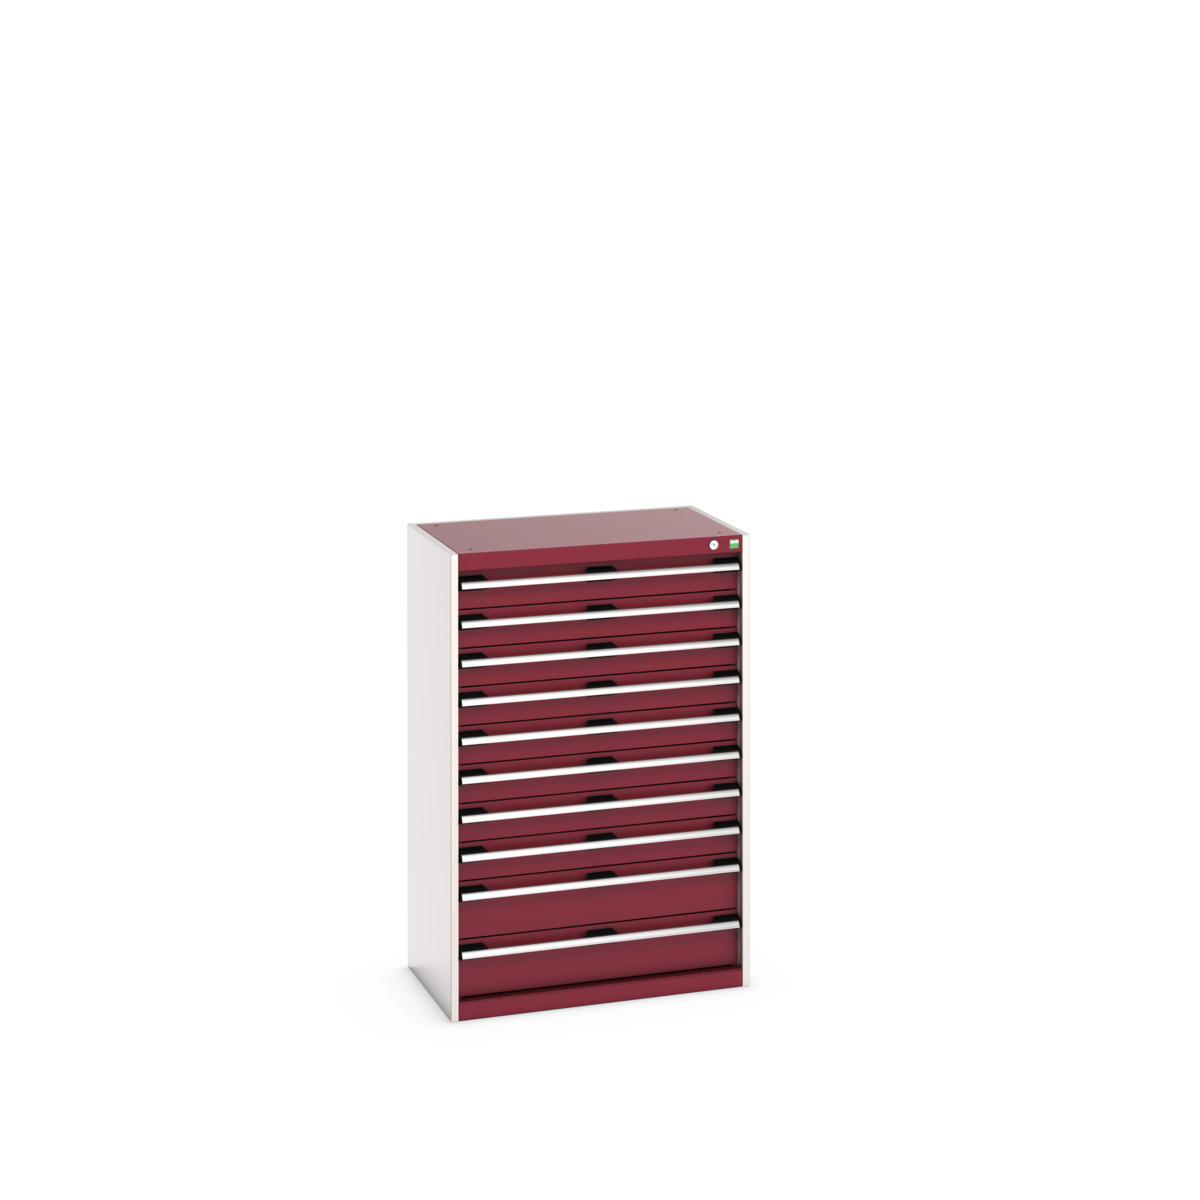 40012108.24V - cubio drawer cabinet